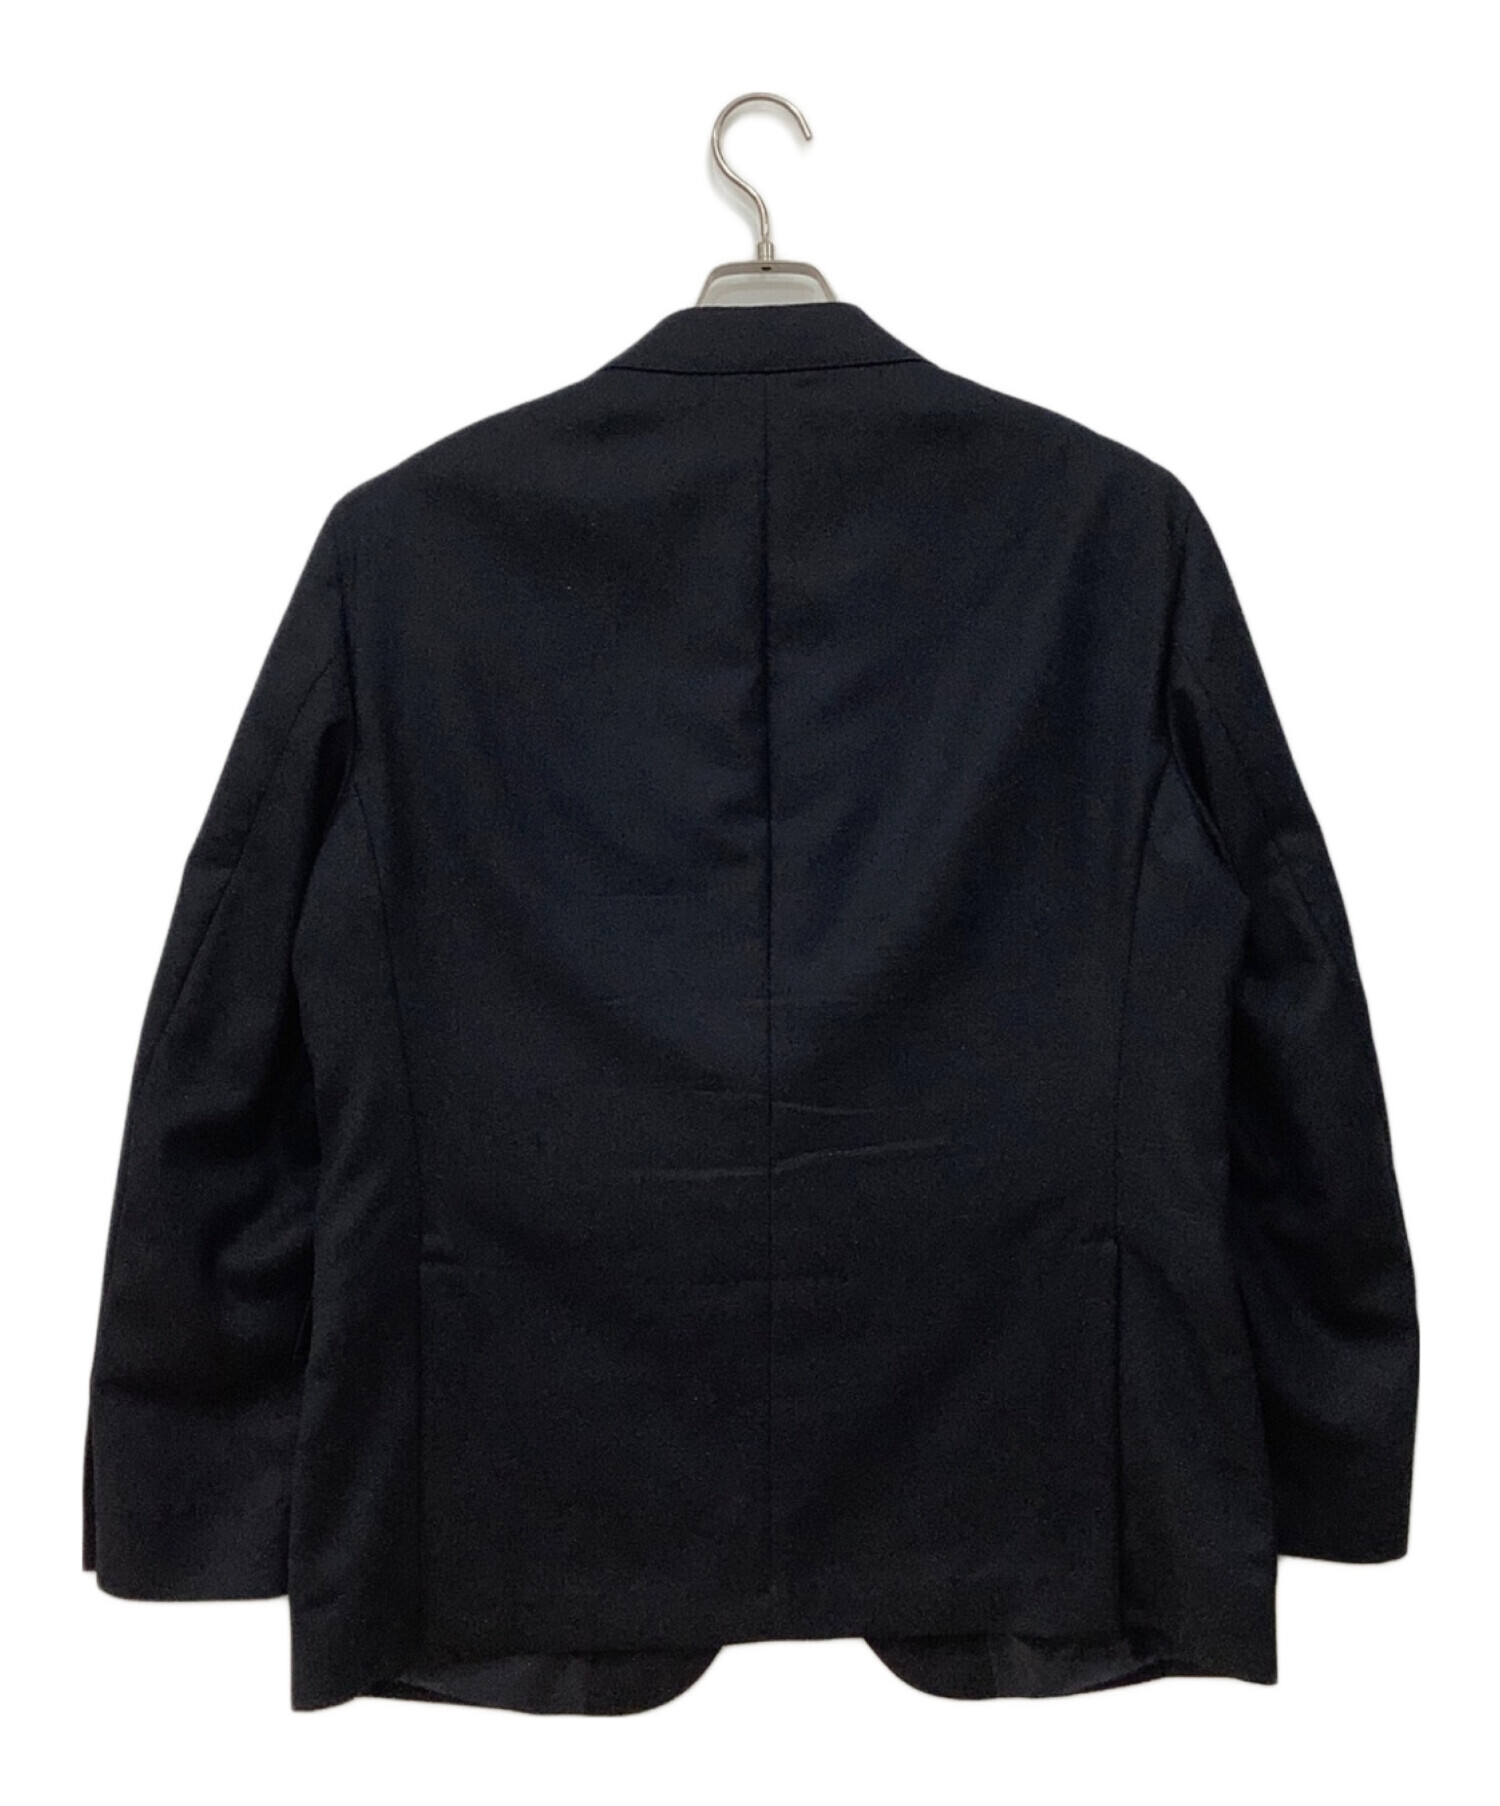 POLO RALPH LAUREN (ポロ・ラルフローレン) テーラードジャケット ネイビー サイズ:42S